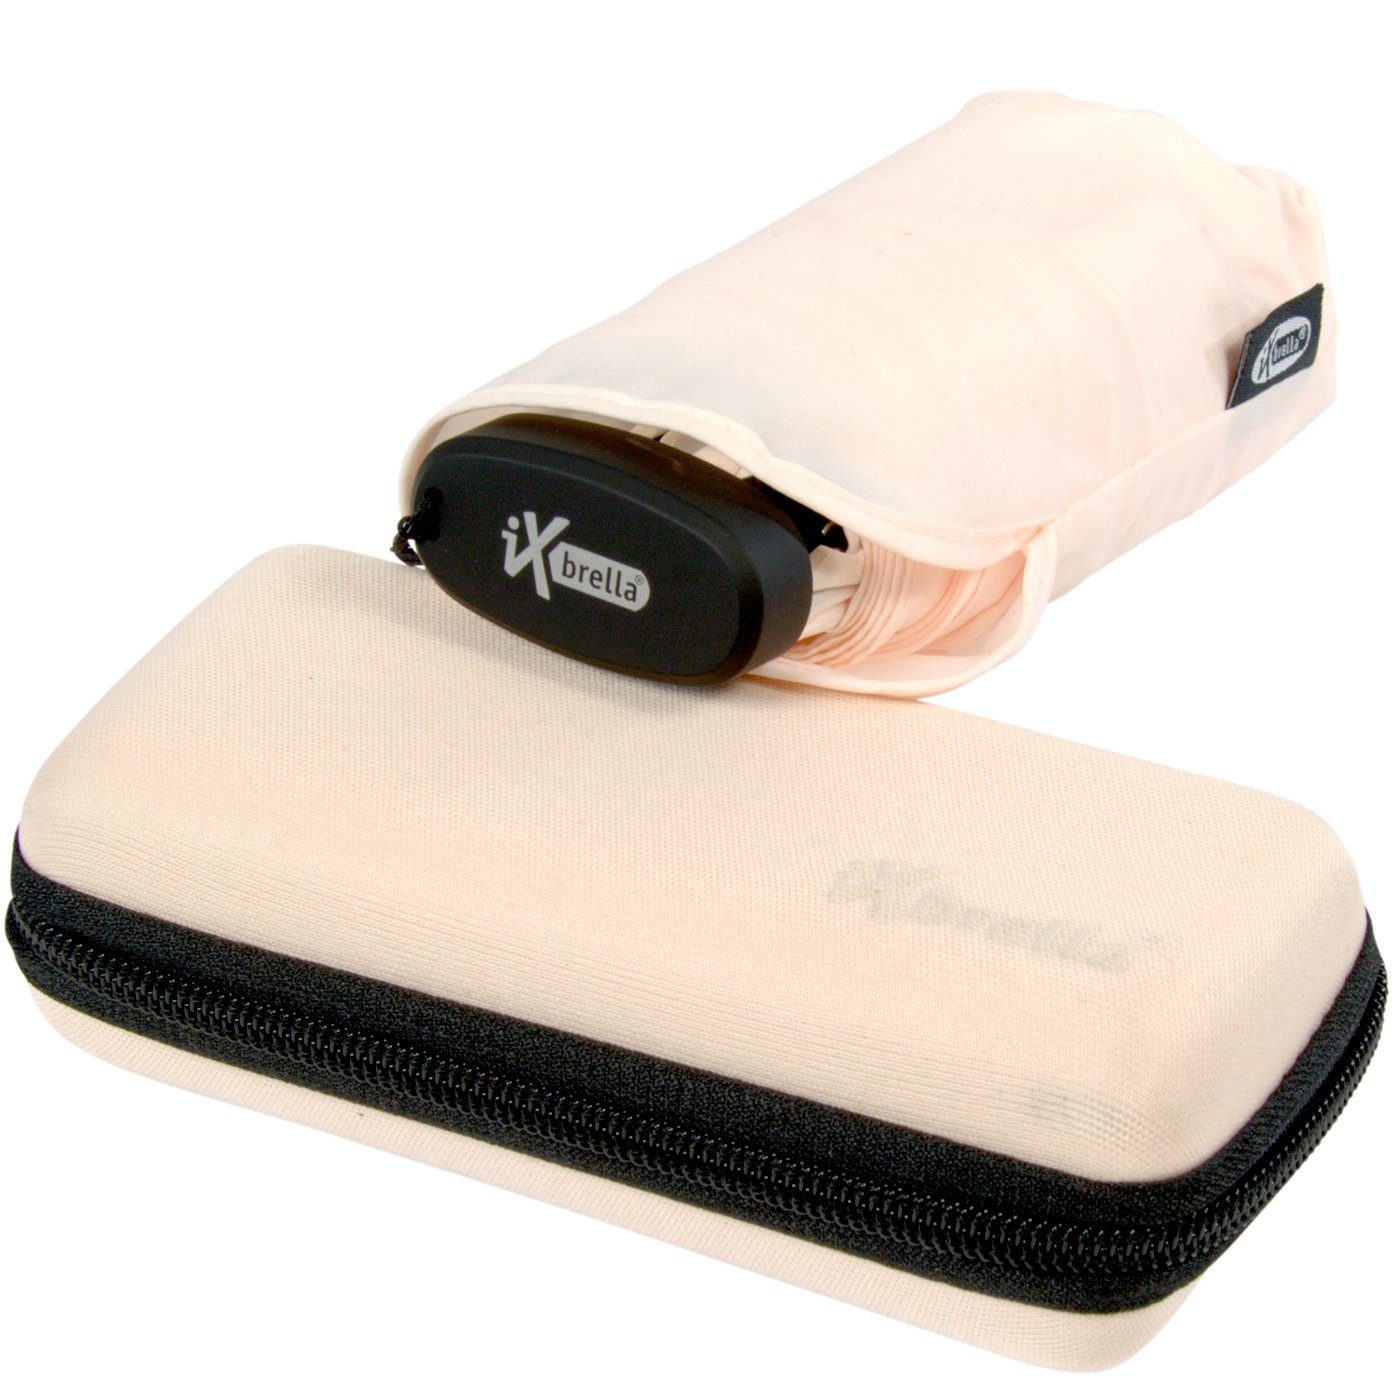 iX-brella Taschenregenschirm Ultra Mini 15 cm winziger Schirm im Handy Format, ultra-klein, mit Softcase-Etui - sea salt hellrosa